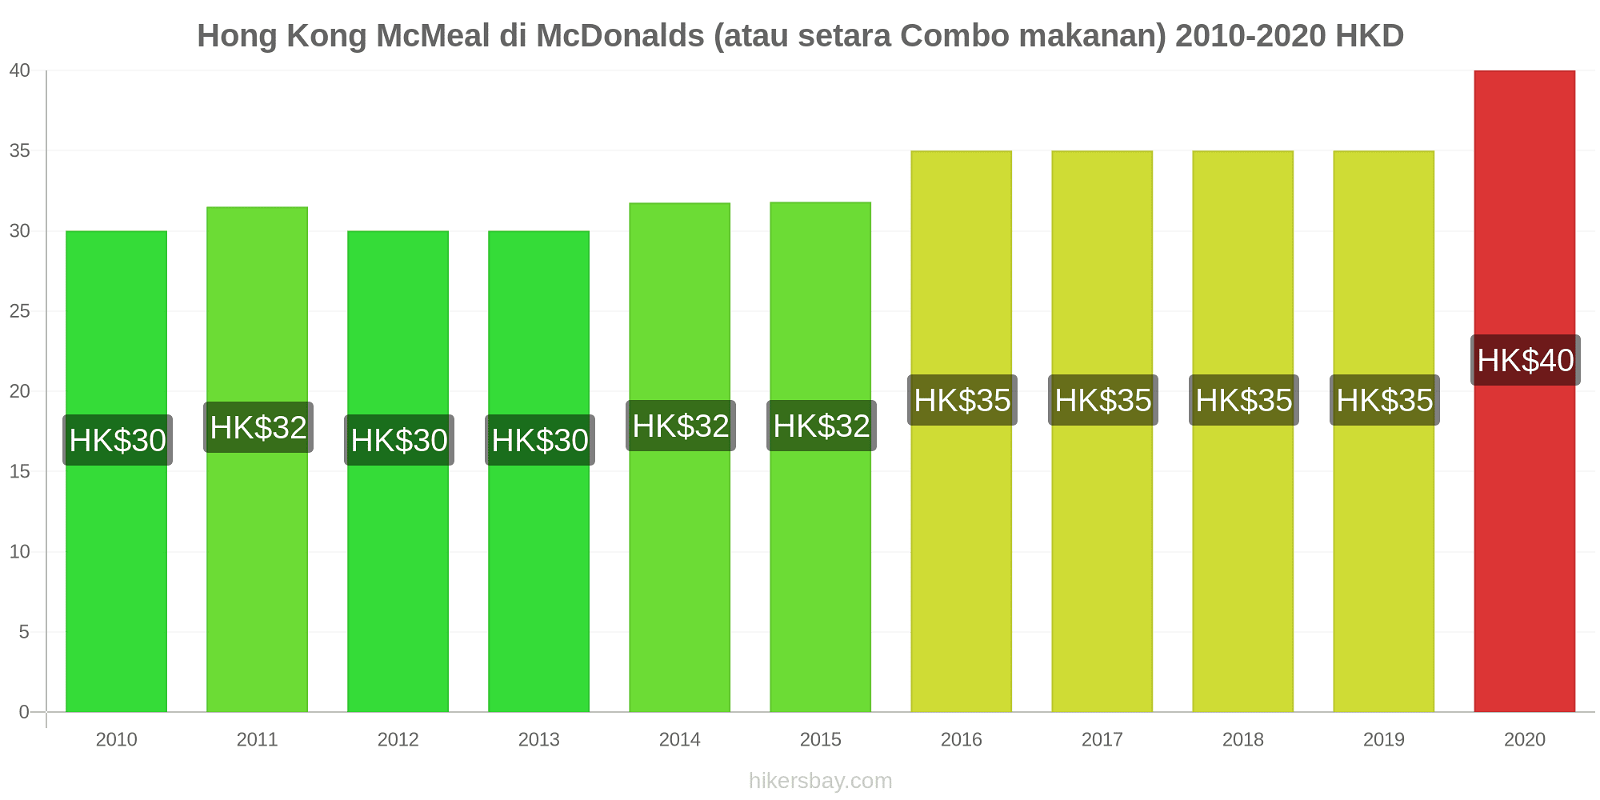 Hong Kong perubahan harga McMeal di McDonalds (atau setara Combo makanan) hikersbay.com